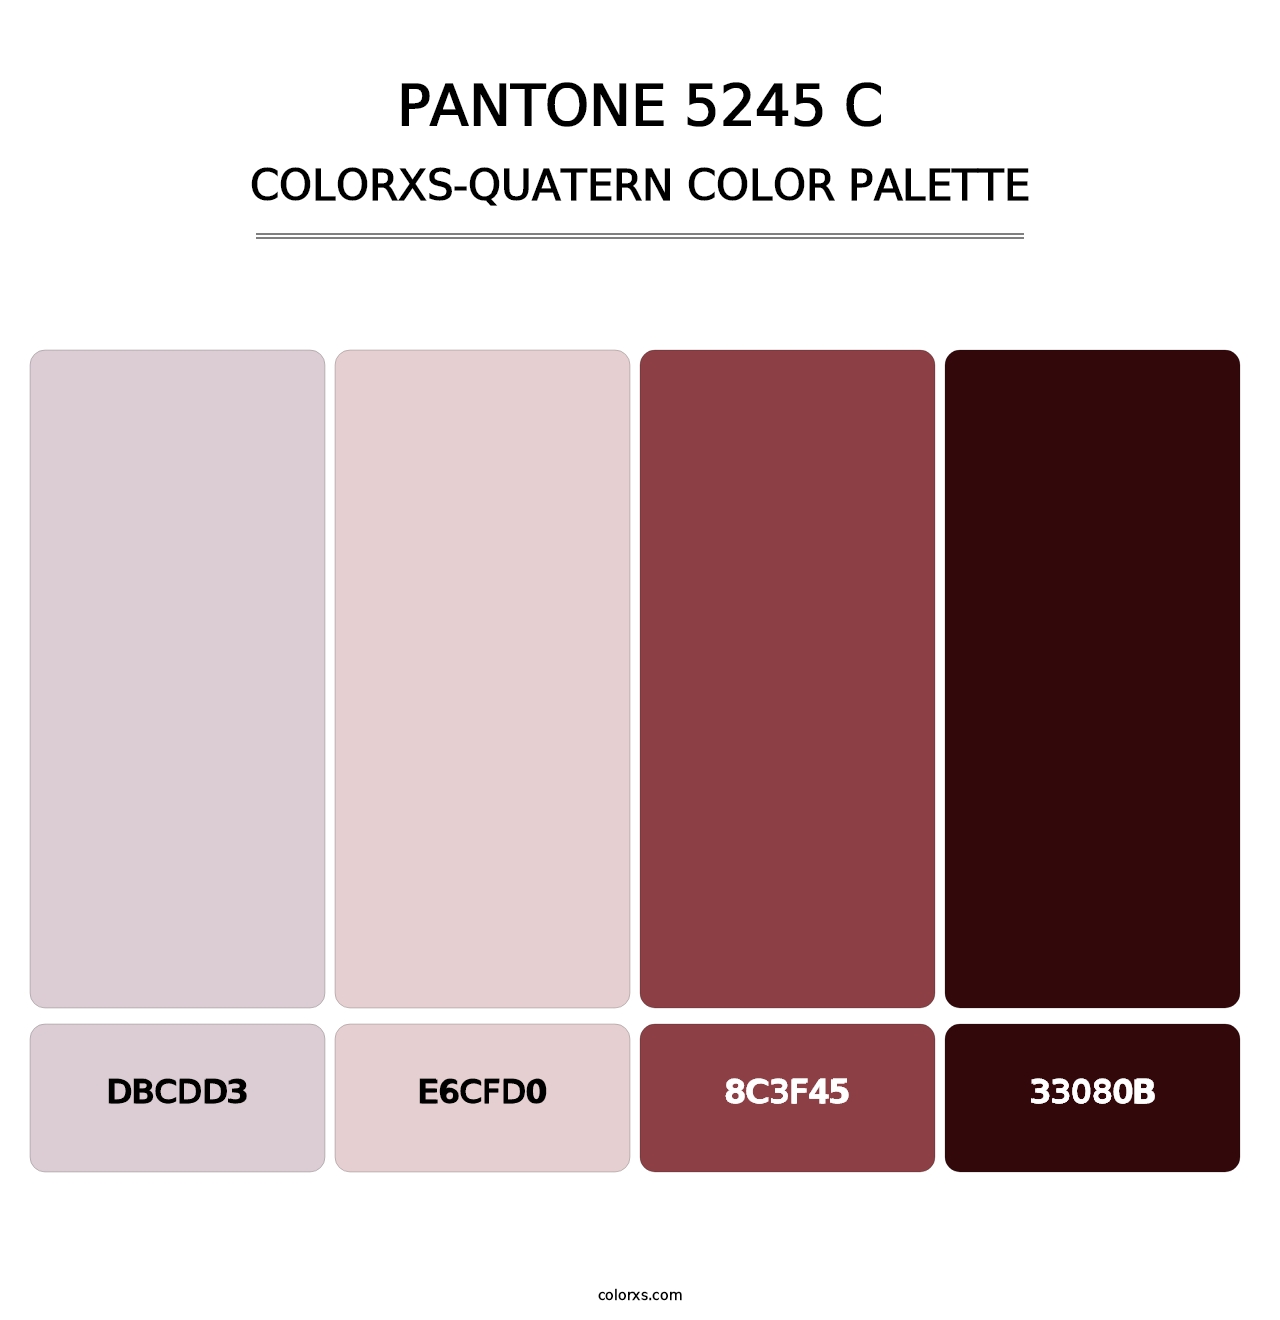 PANTONE 5245 C - Colorxs Quatern Palette